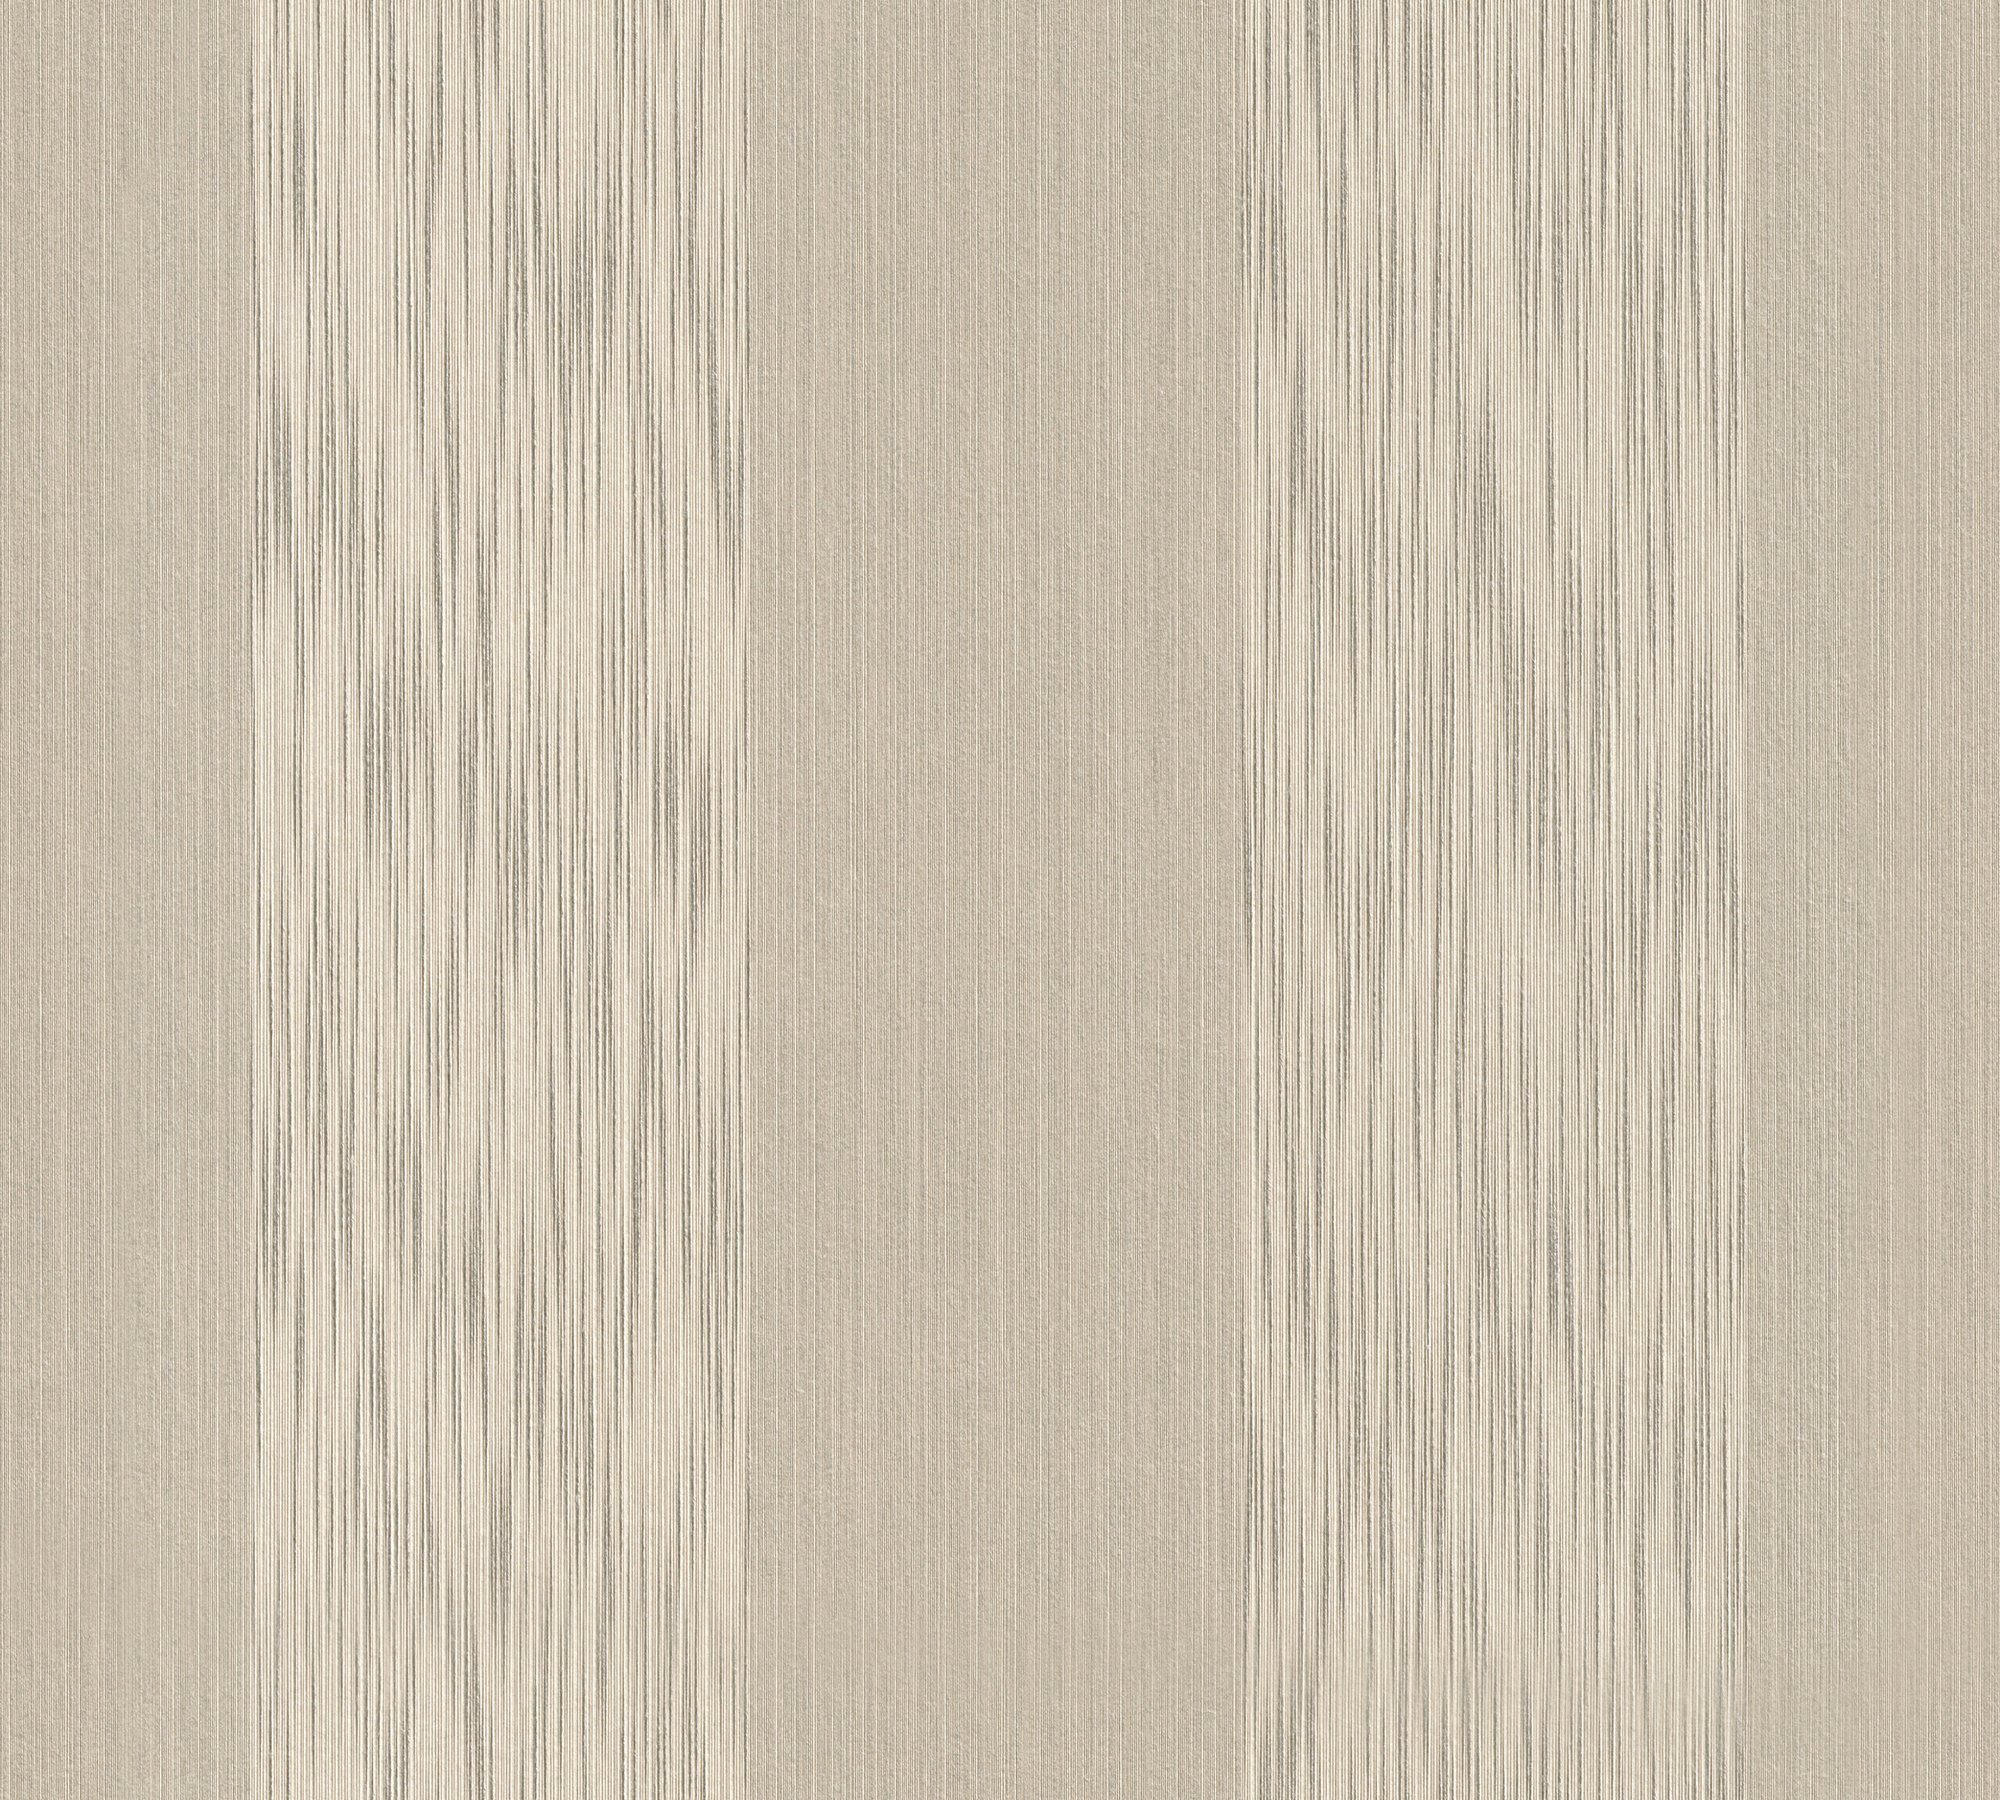 Tessuto, Architects samtig, Streifen gestreift, A.S. beige Tapete Textiltapete Création Paper